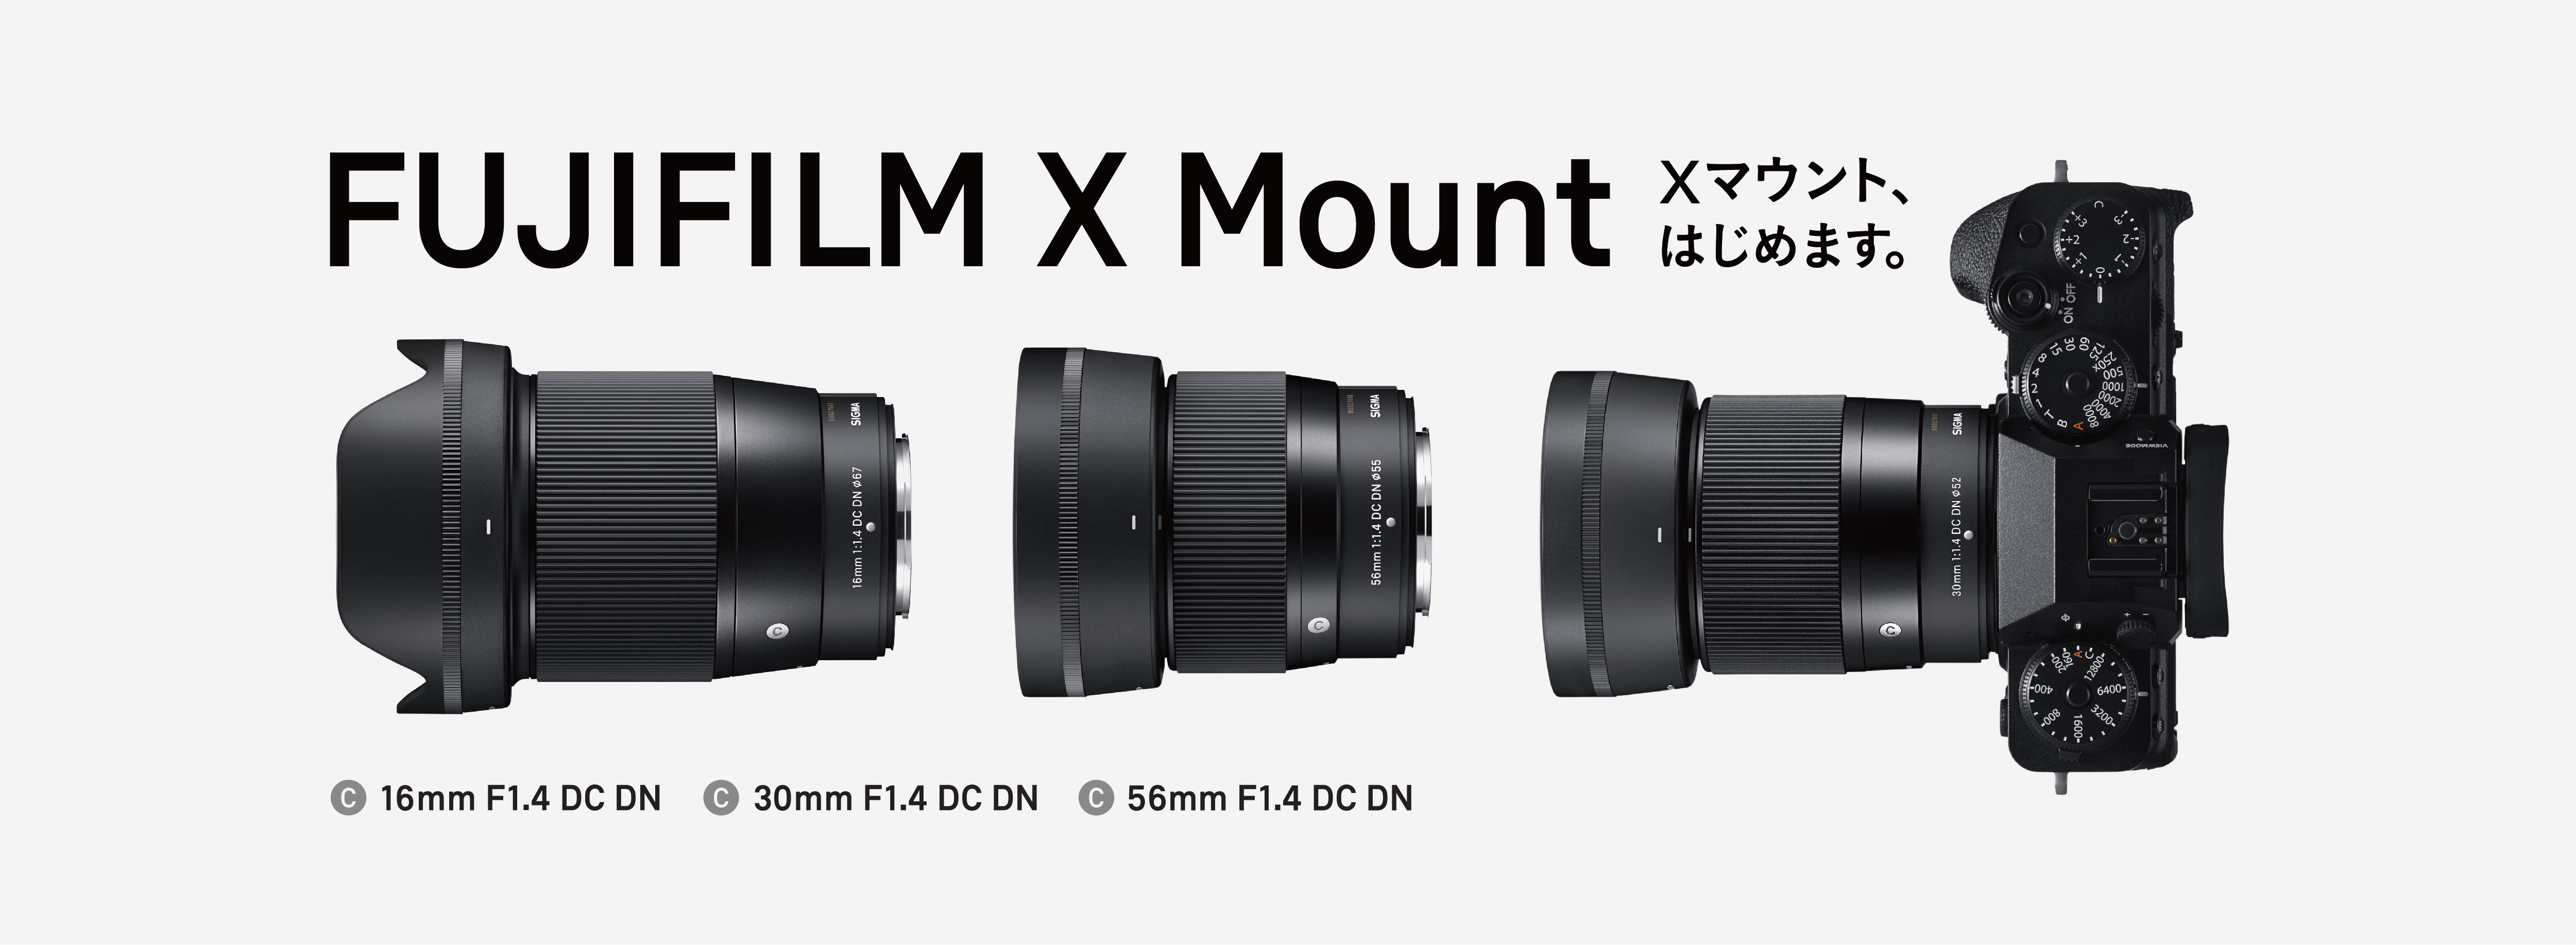 SIGMA ミラーレスカメラ用レンズに富士フイルムXマウント用を追加しま ...